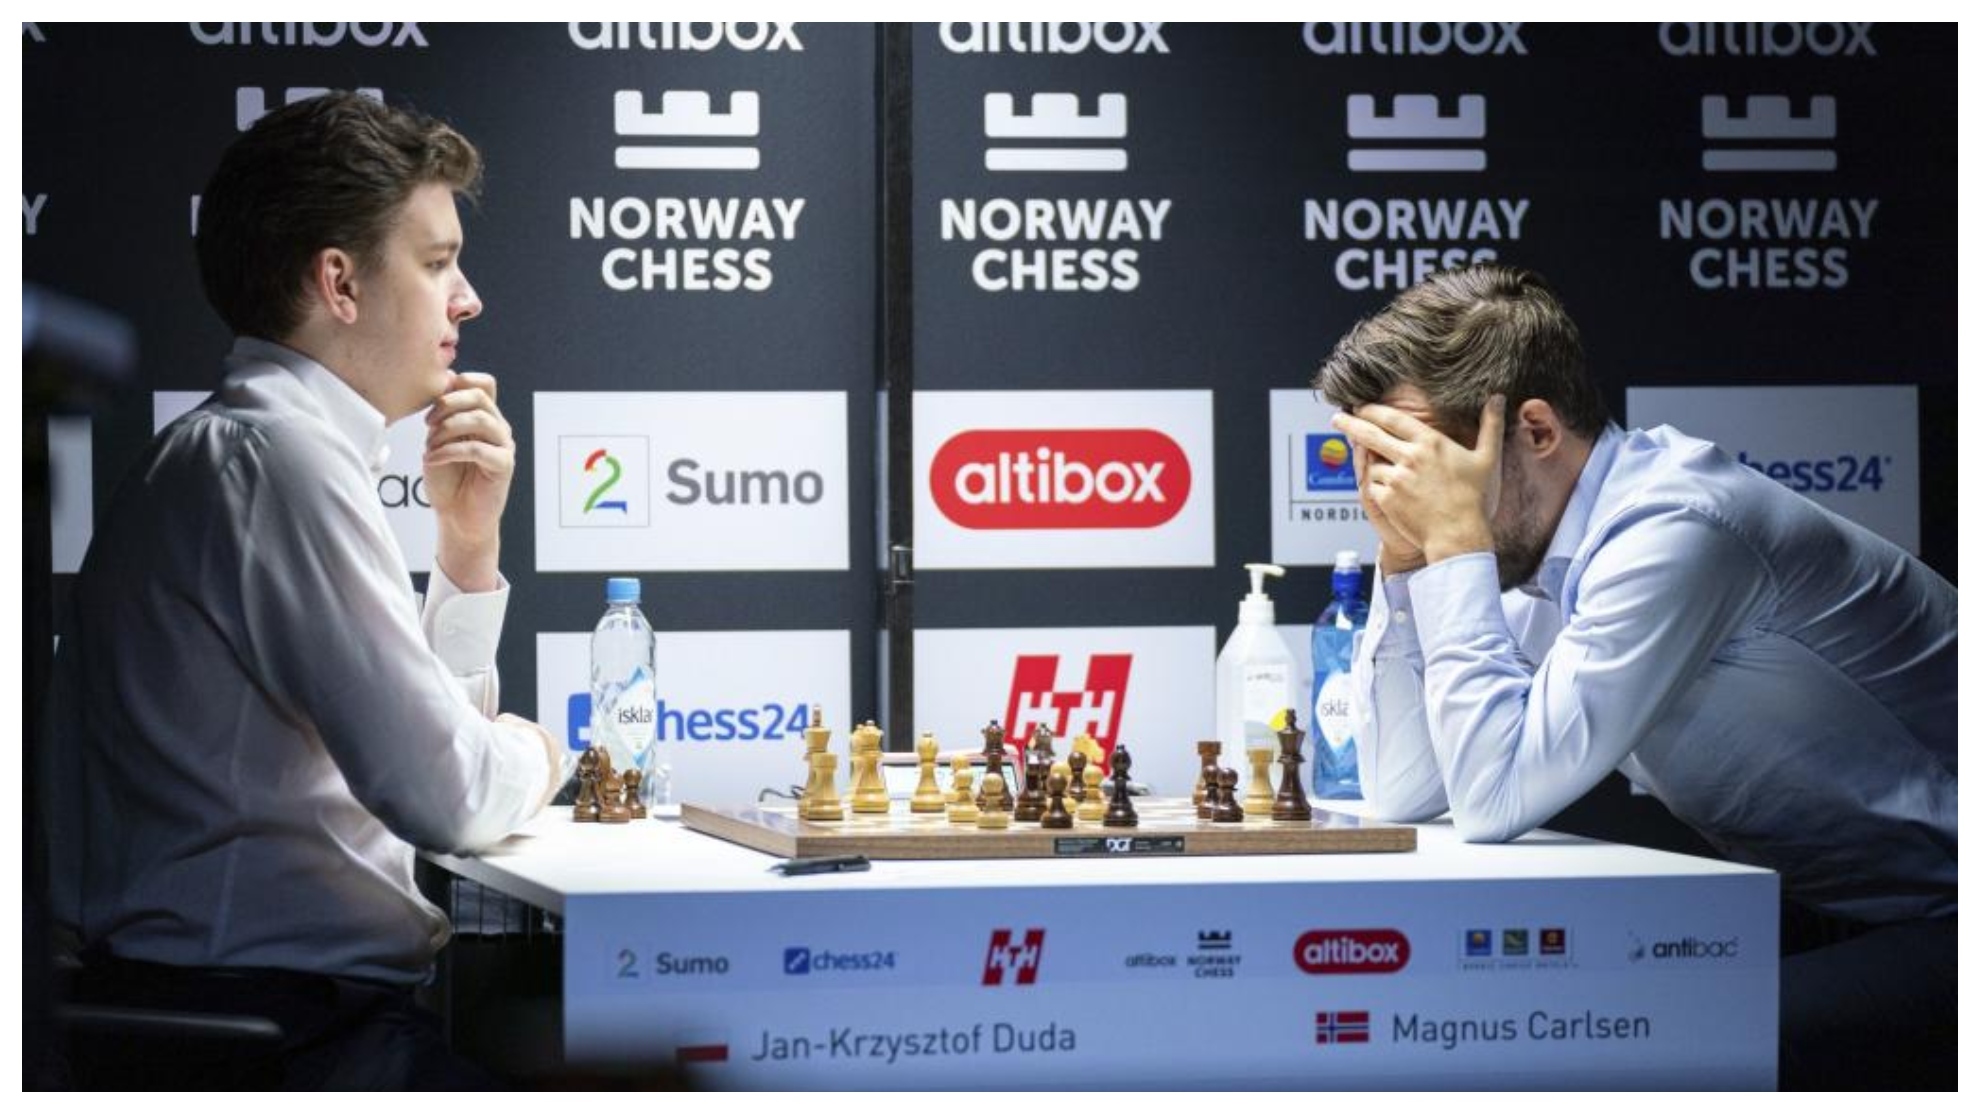 Jan-Krzysztof Duda, uno de los clasificados para el torneo, en una partida contra Carlsen.